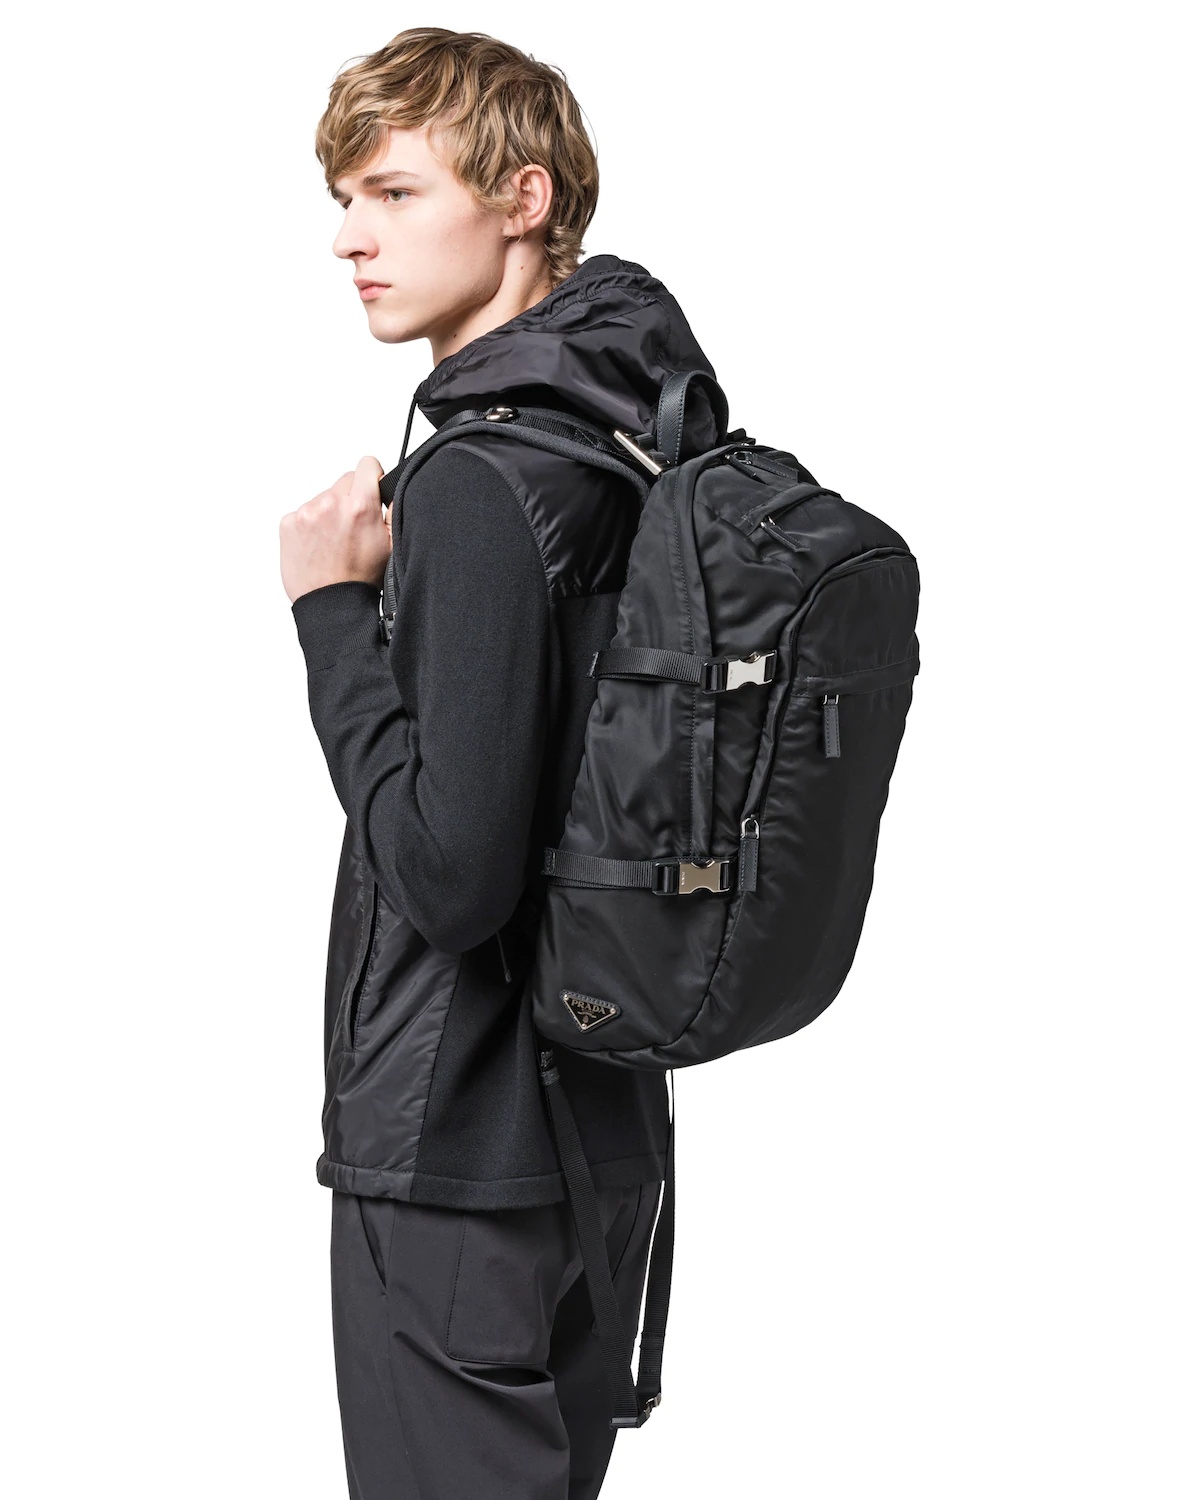 Nylon Backpack - 2